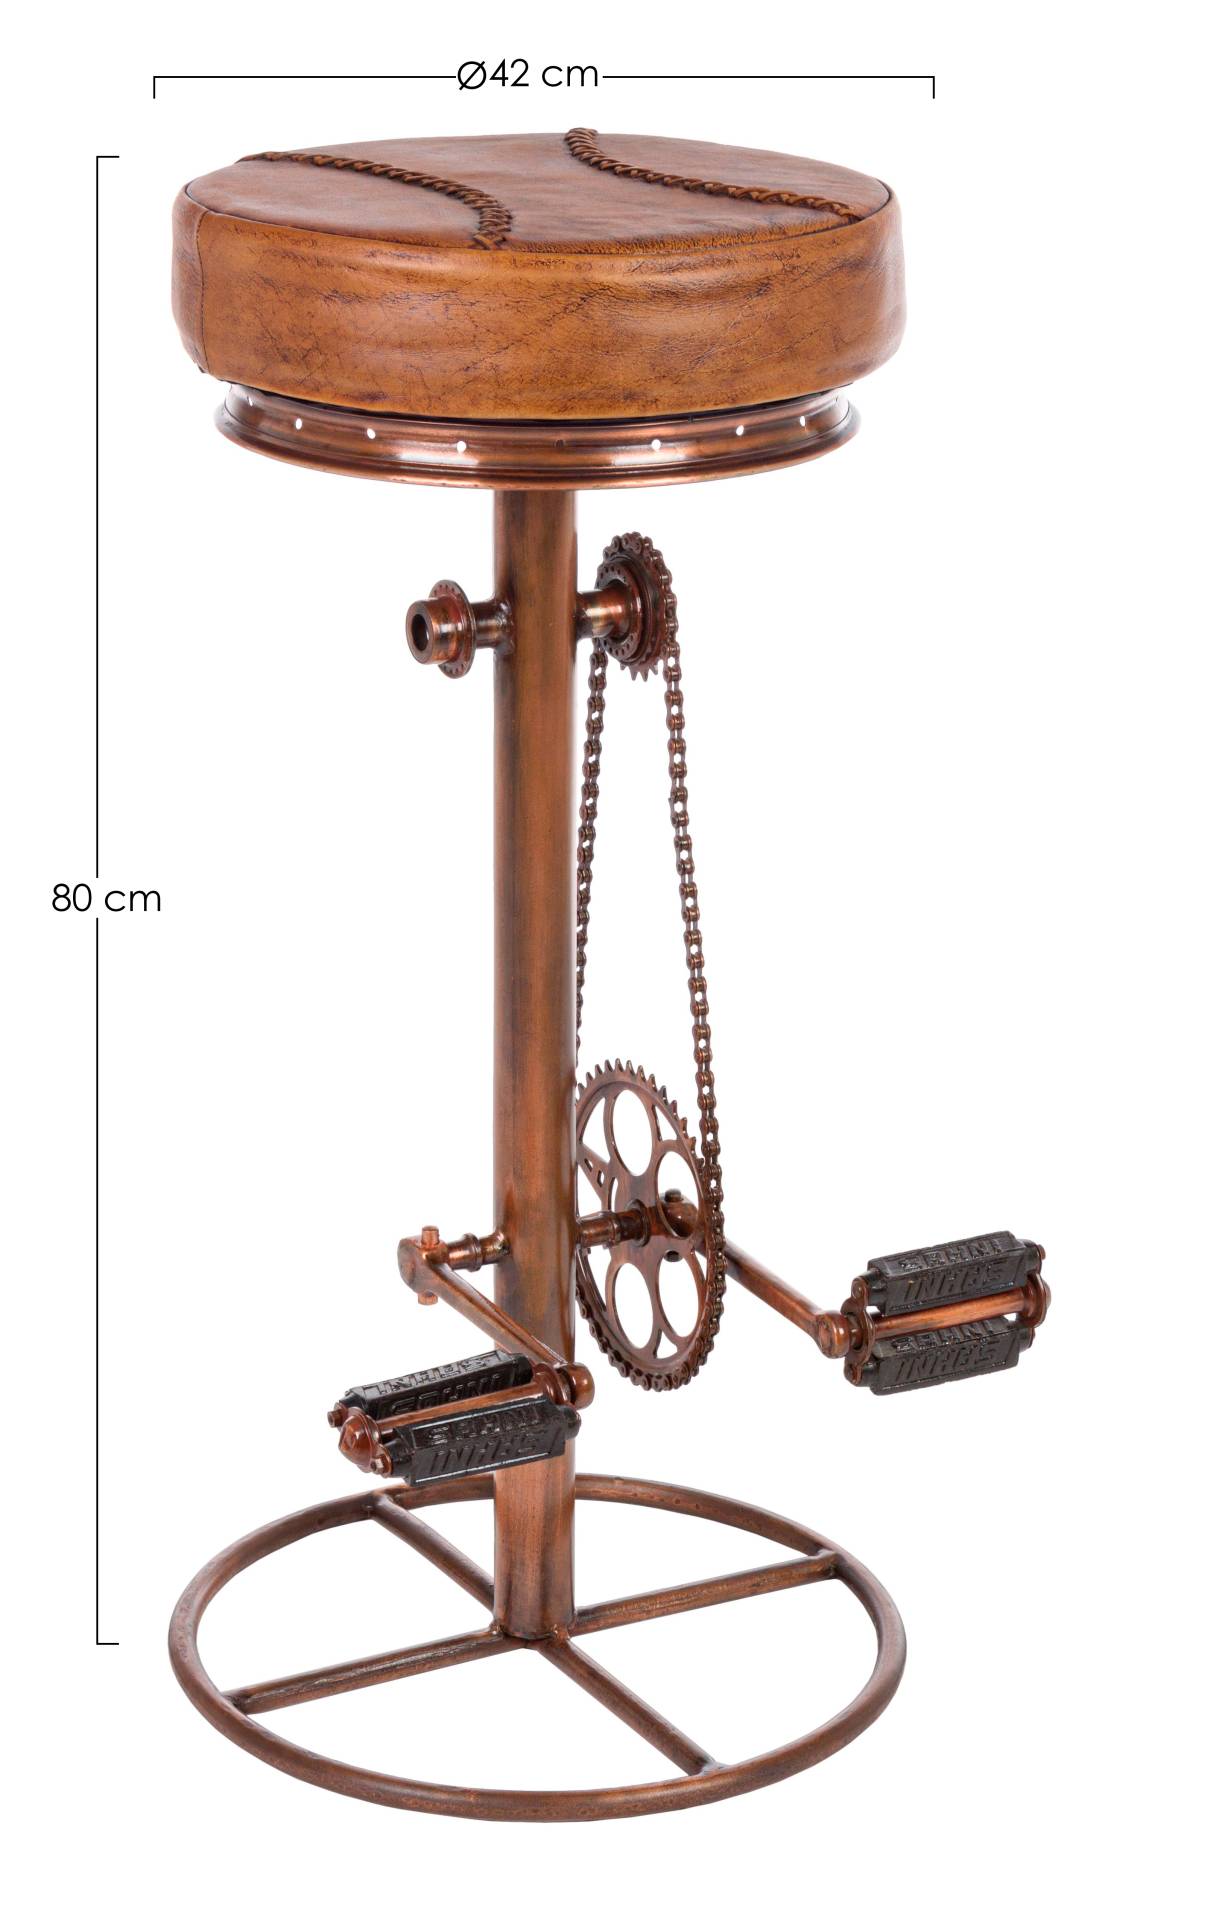 Der Barhocker Cycle überzeugt mit seinem industriellem Design. Gefertigt wurde er aus Leder, welches einen Cognac Farbton besitzt. Das Gestell ist aus Metall und hat eine Bronze Farbe. Die Sitzhöhe des Hockers beträgt 80 cm.